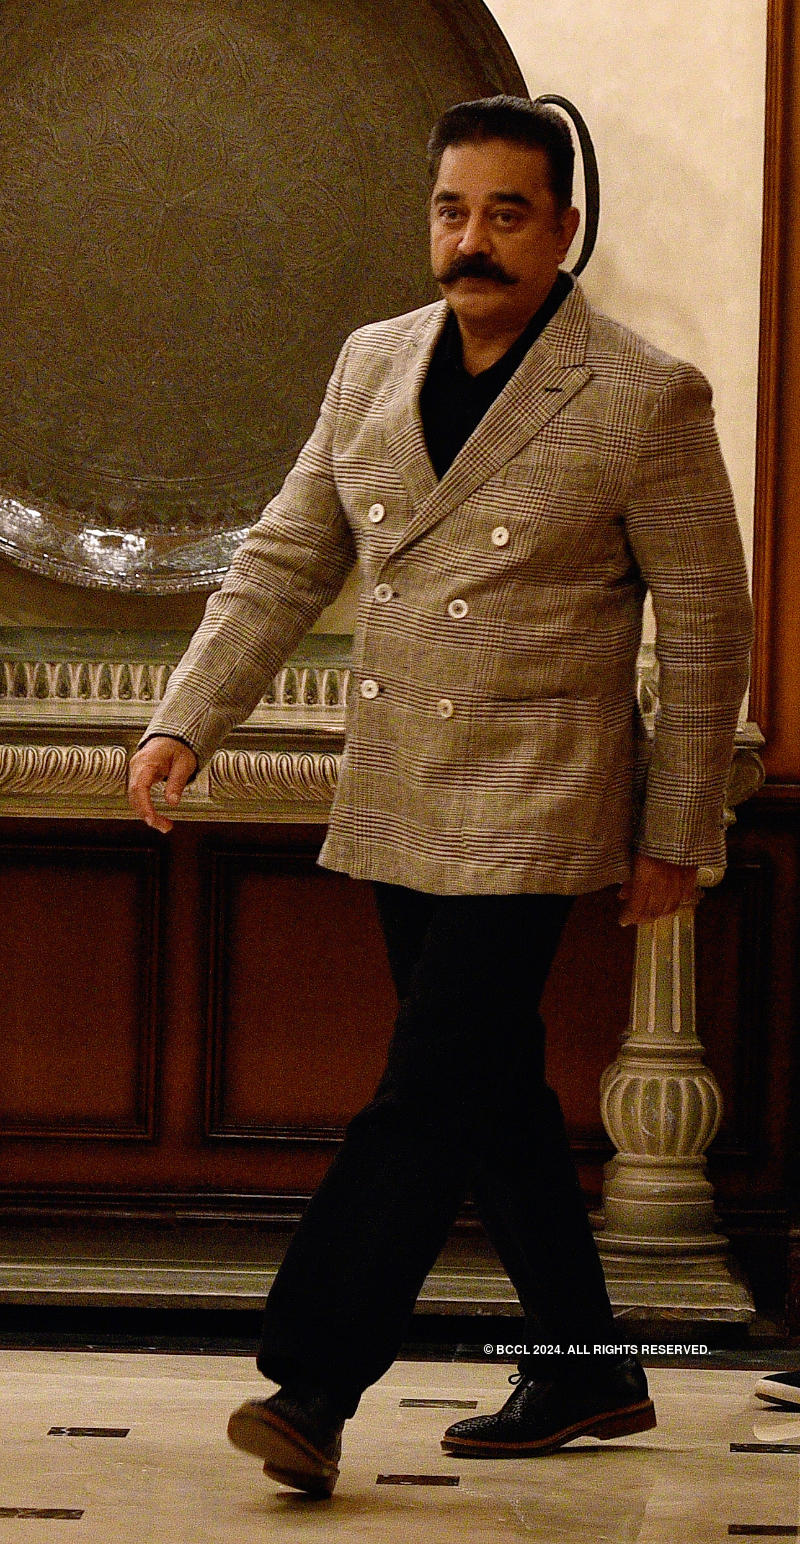 Kamal Haasan attends an event